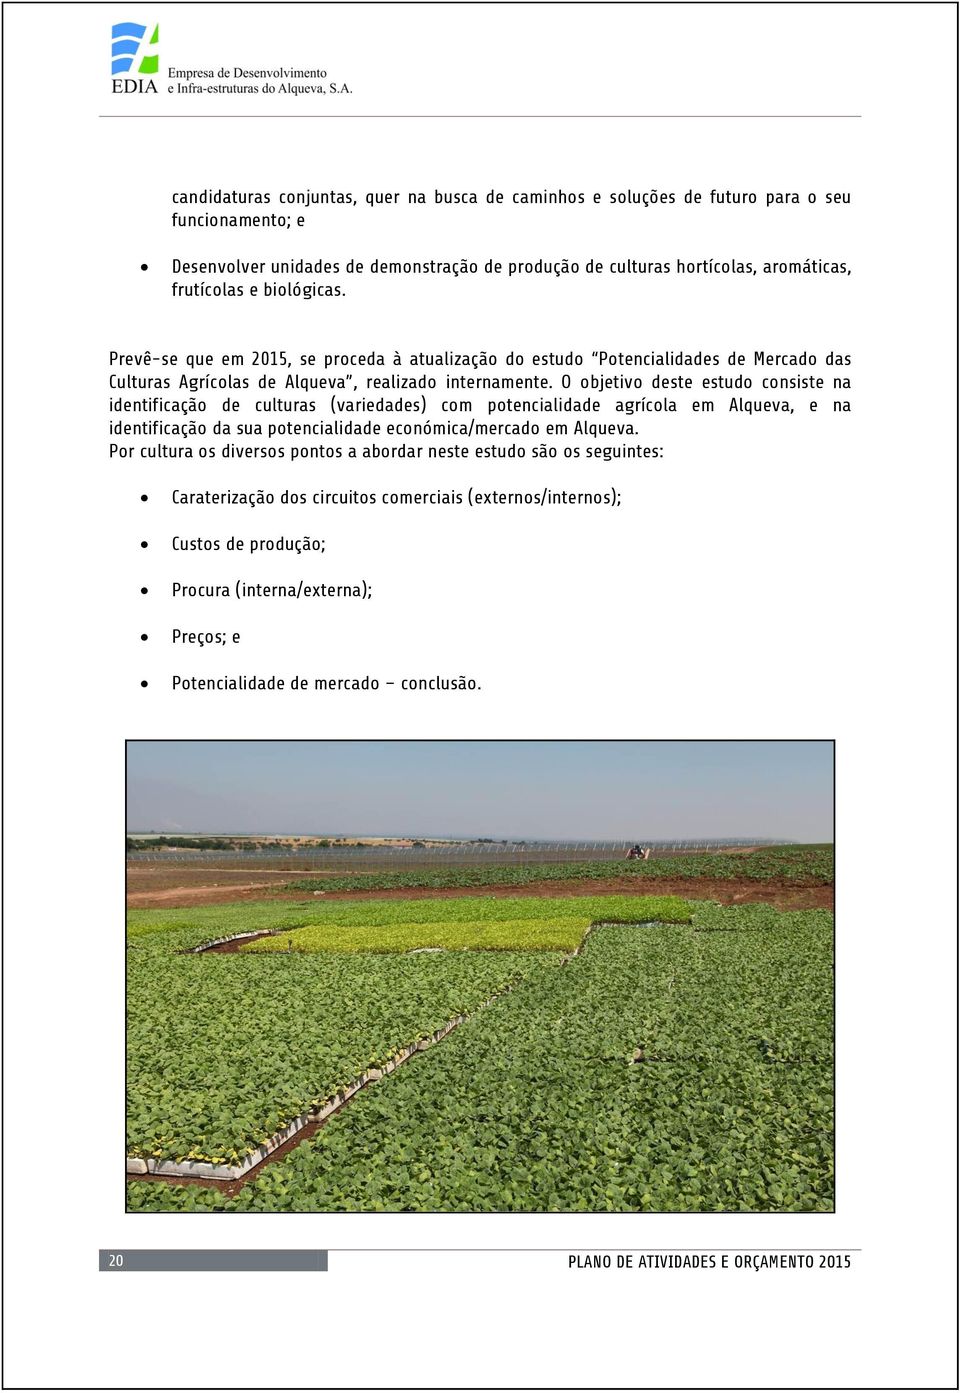 O objetivo deste estudo consiste na identificação de culturas (variedades) com potencialidade agrícola em Alqueva, e na identificação da sua potencialidade económica/mercado em Alqueva.